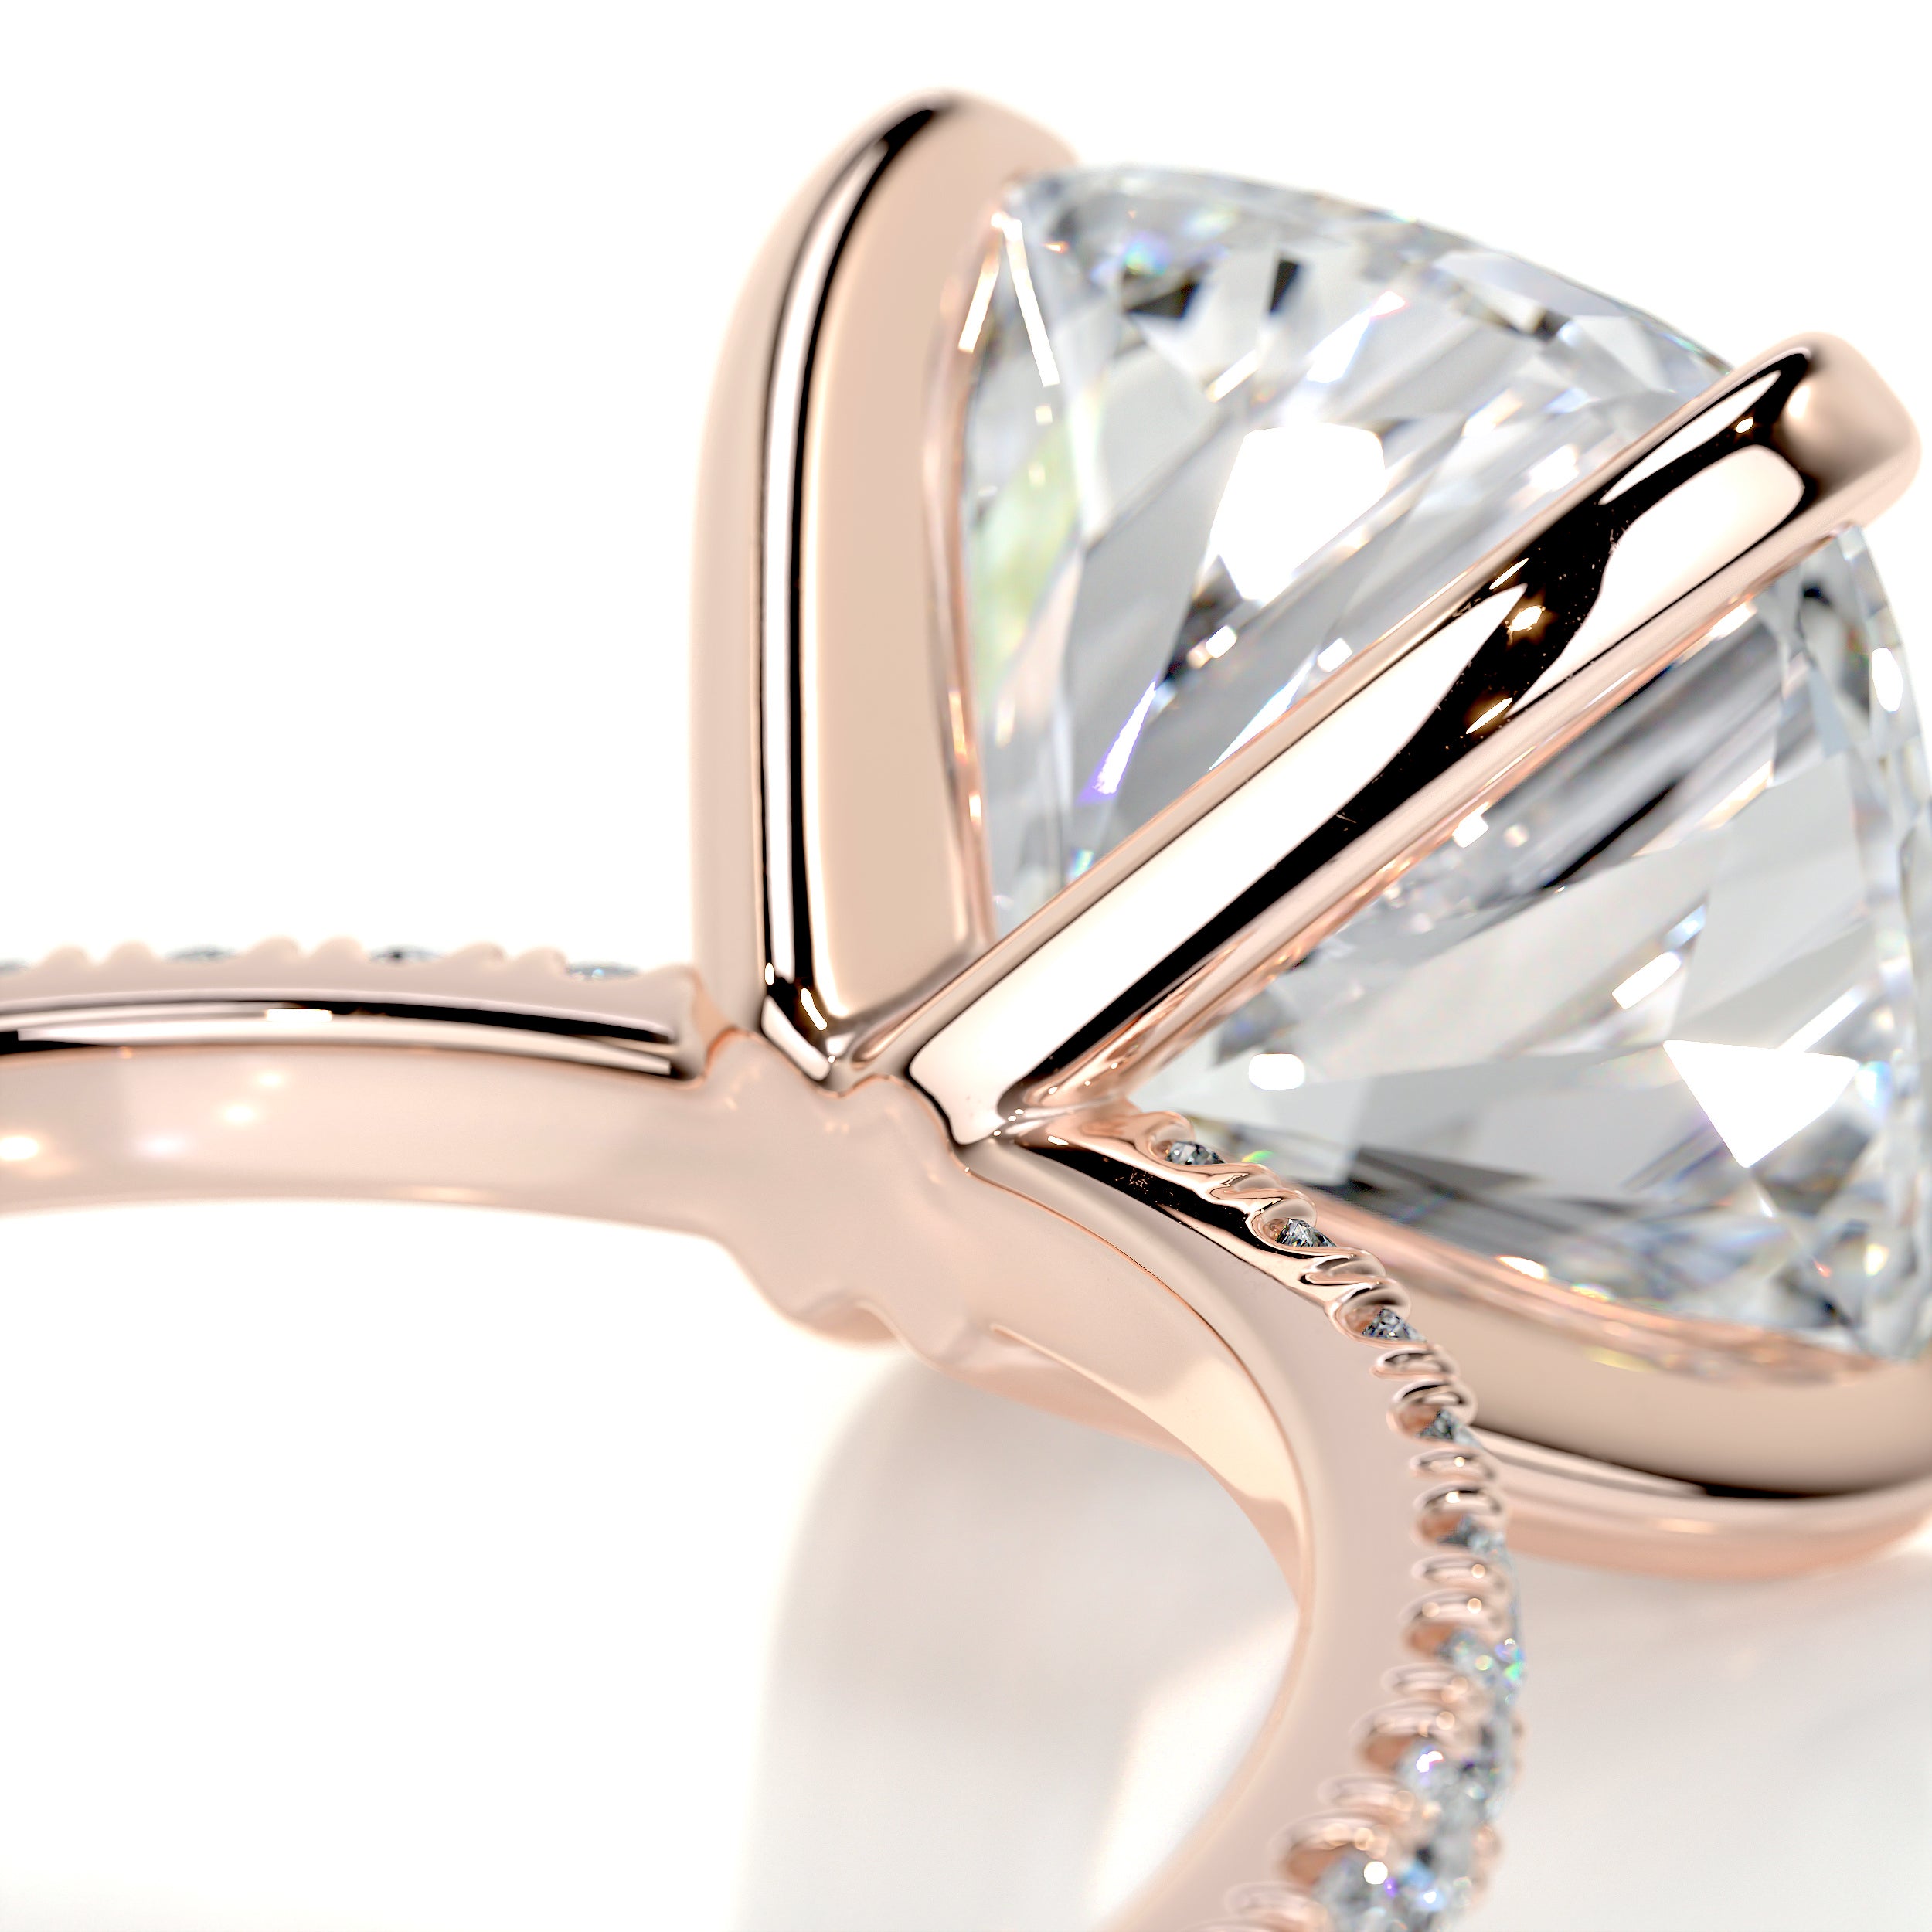 Stephanie Moissanite & Diamonds Ring   (4.5 Carat) -14K Rose Gold